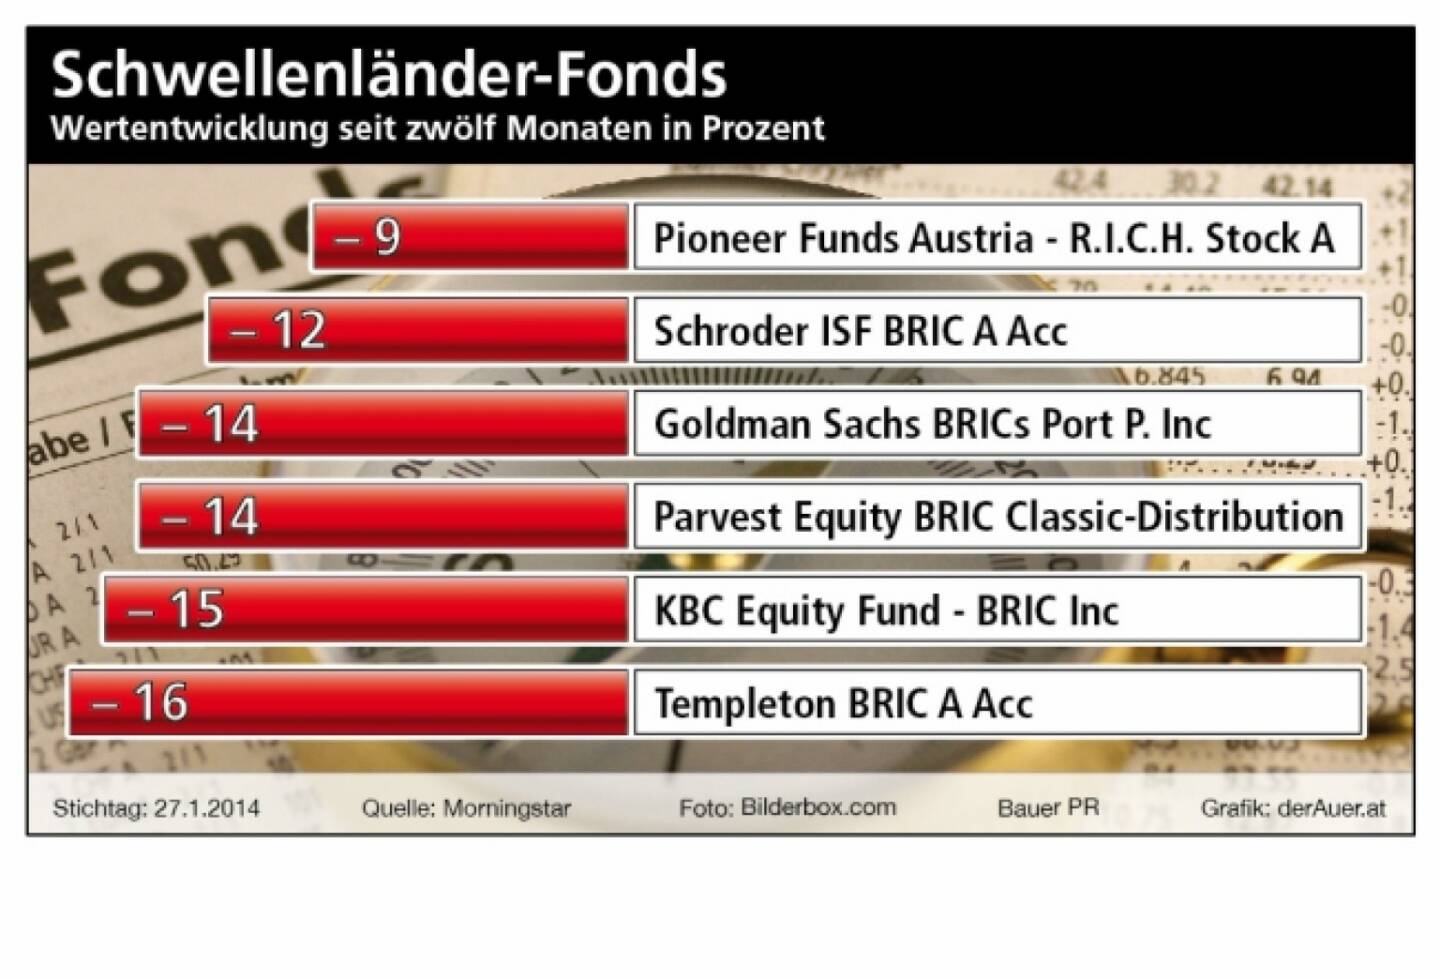 Schwellenländer-Fonds, Wertzuwachs seit zwölf Monaten in Prozent. Pioneer, Schroder, Goldman, Parvest, KBC, Templeton (c) Bauer PR, derAuer.at 